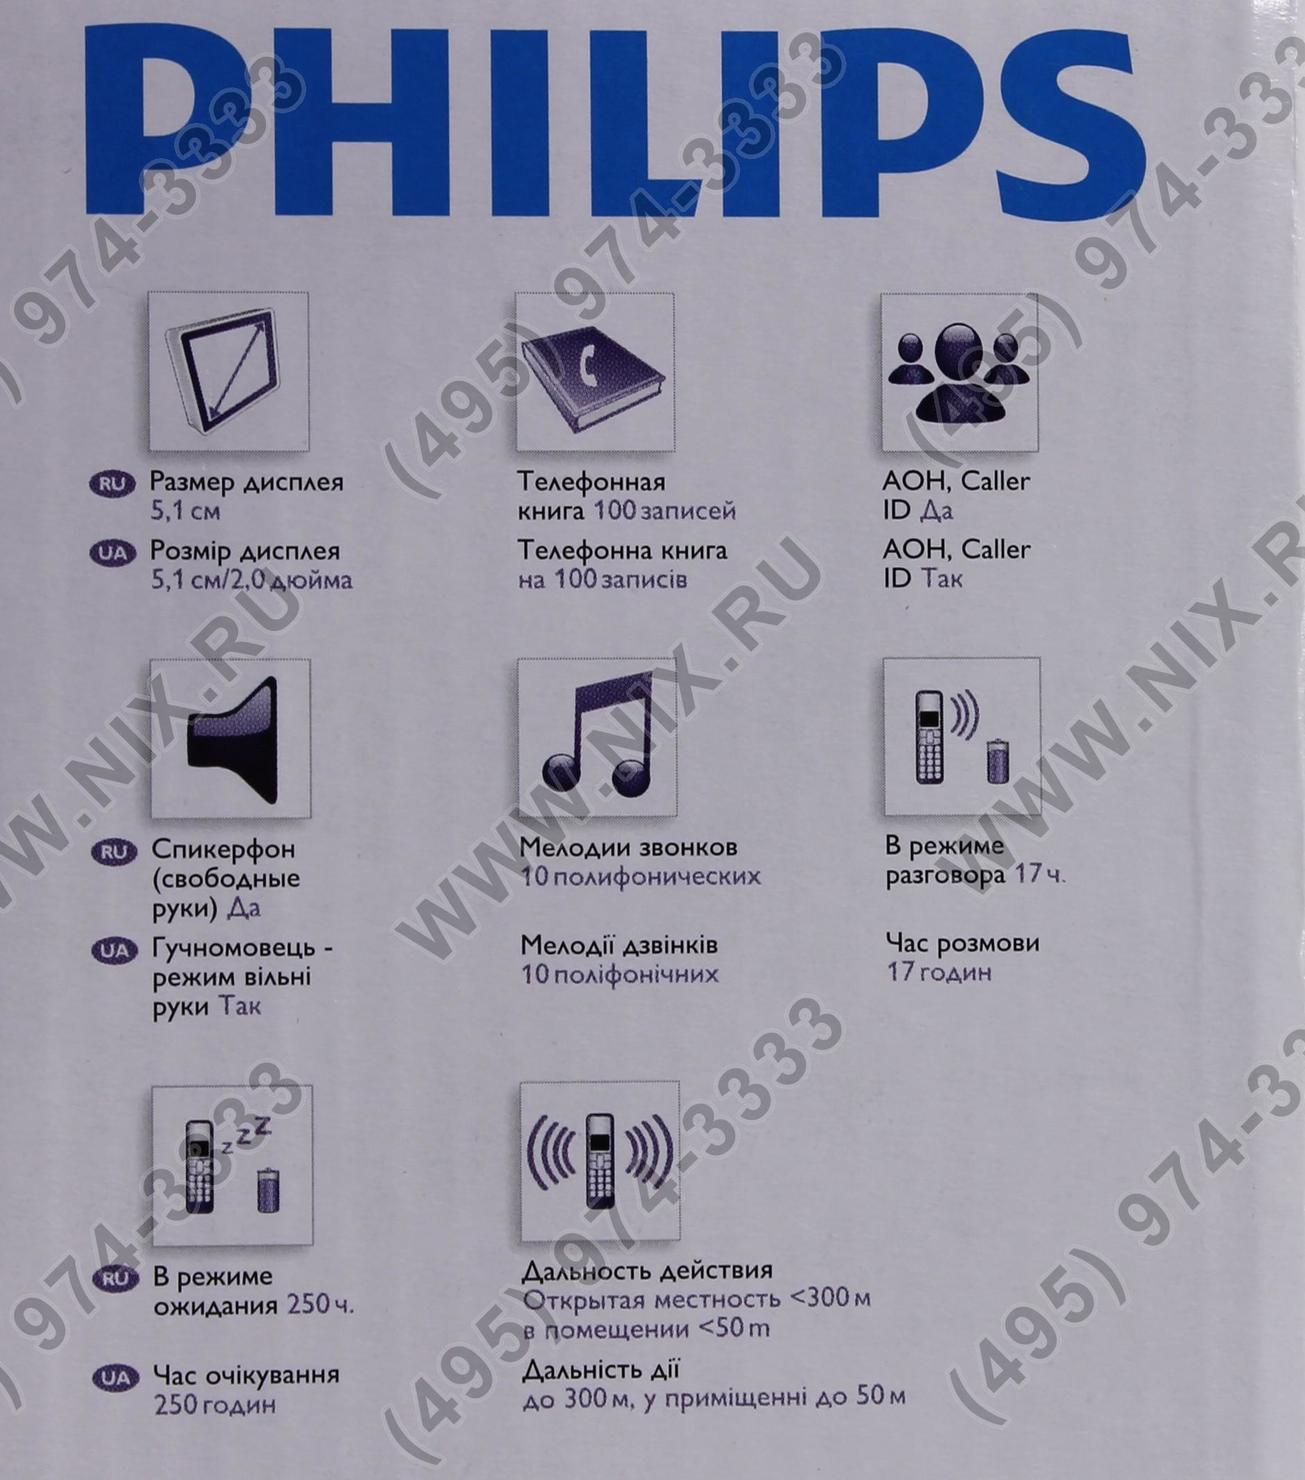 Значки телефона филипс. Philips Xenium значки на дисплее. Кнопочный телефон Philips Xenium значки на экране. Значки на экране телефона Philips кнопочный. Значки на телефоне Филипс кнопочный.